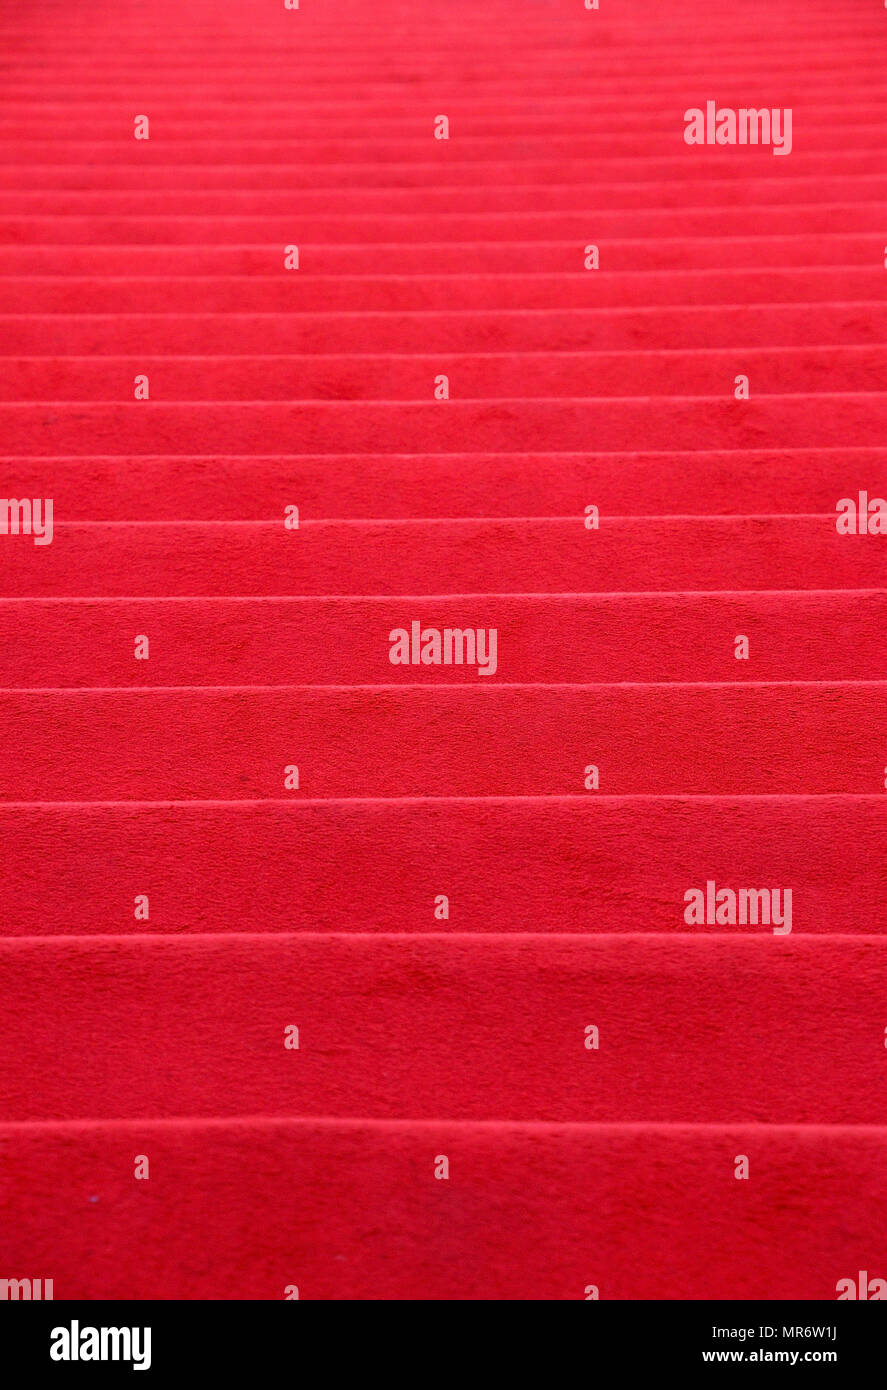 Nahaufnahme der rote Teppich treppen Perspektive aufsteigend, Low Angle View Stockfoto